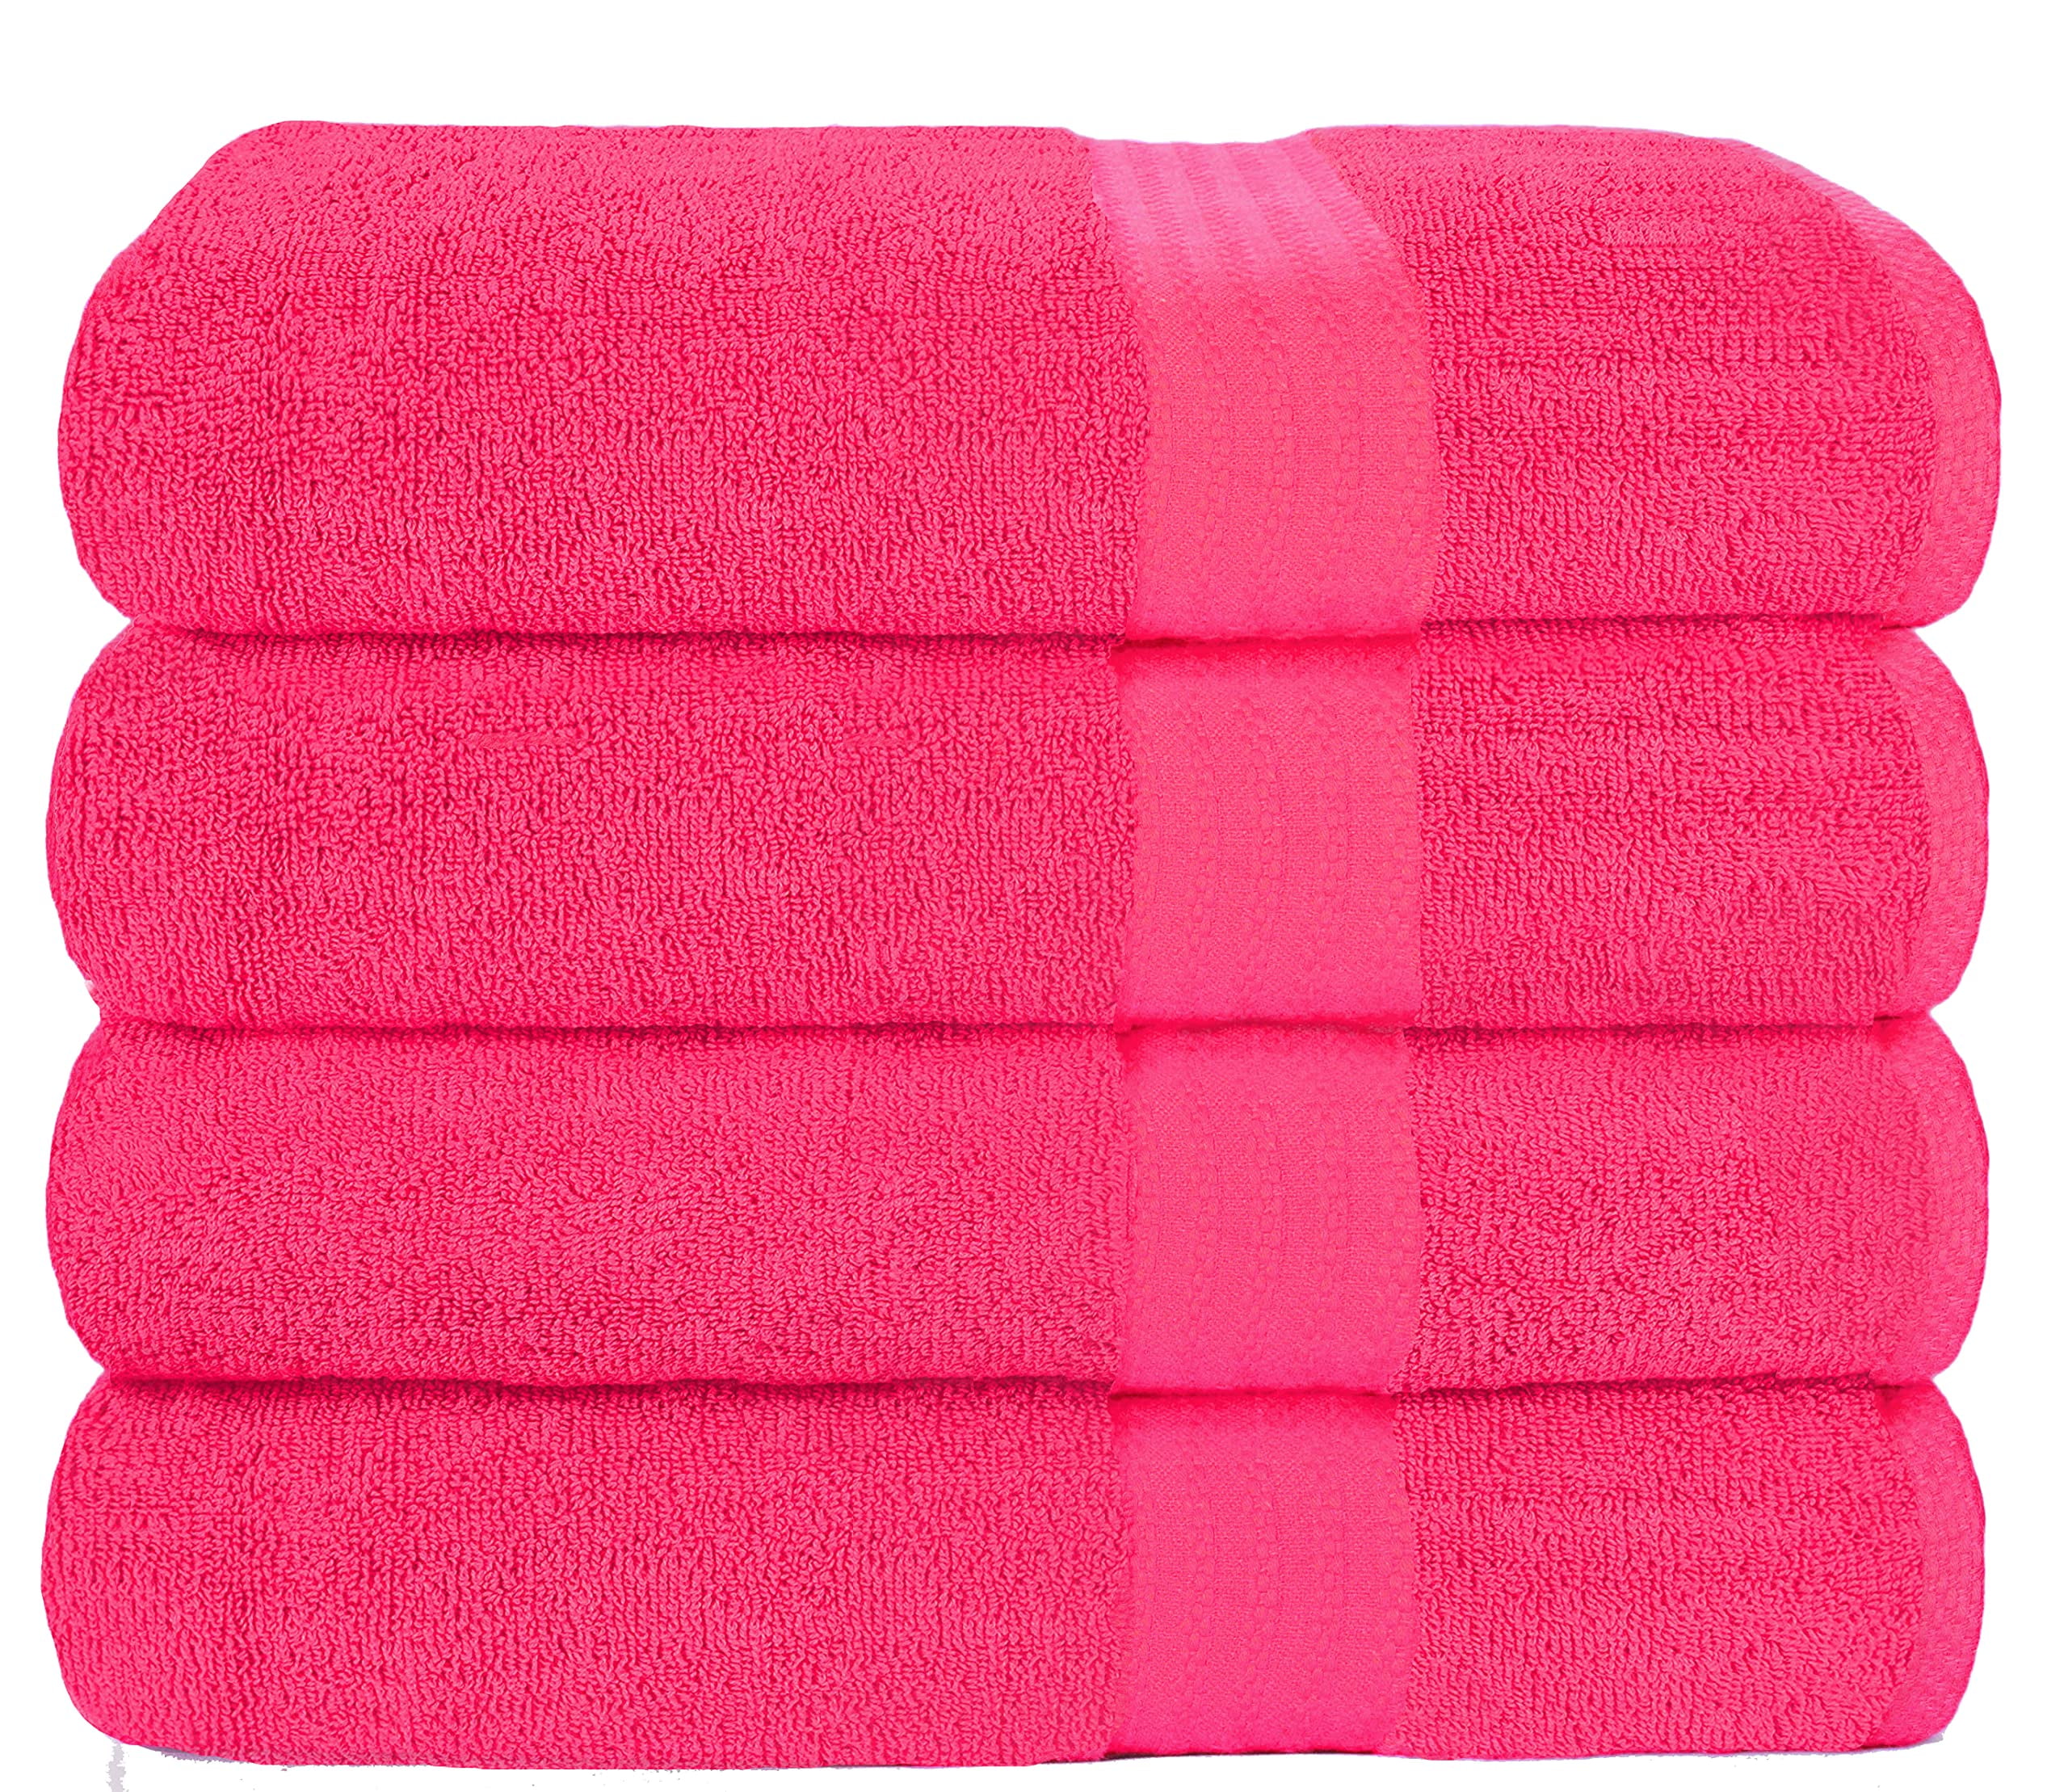 Extra Large Bath Towels 100% Cotton 27X54, 4 Bath Towel Set